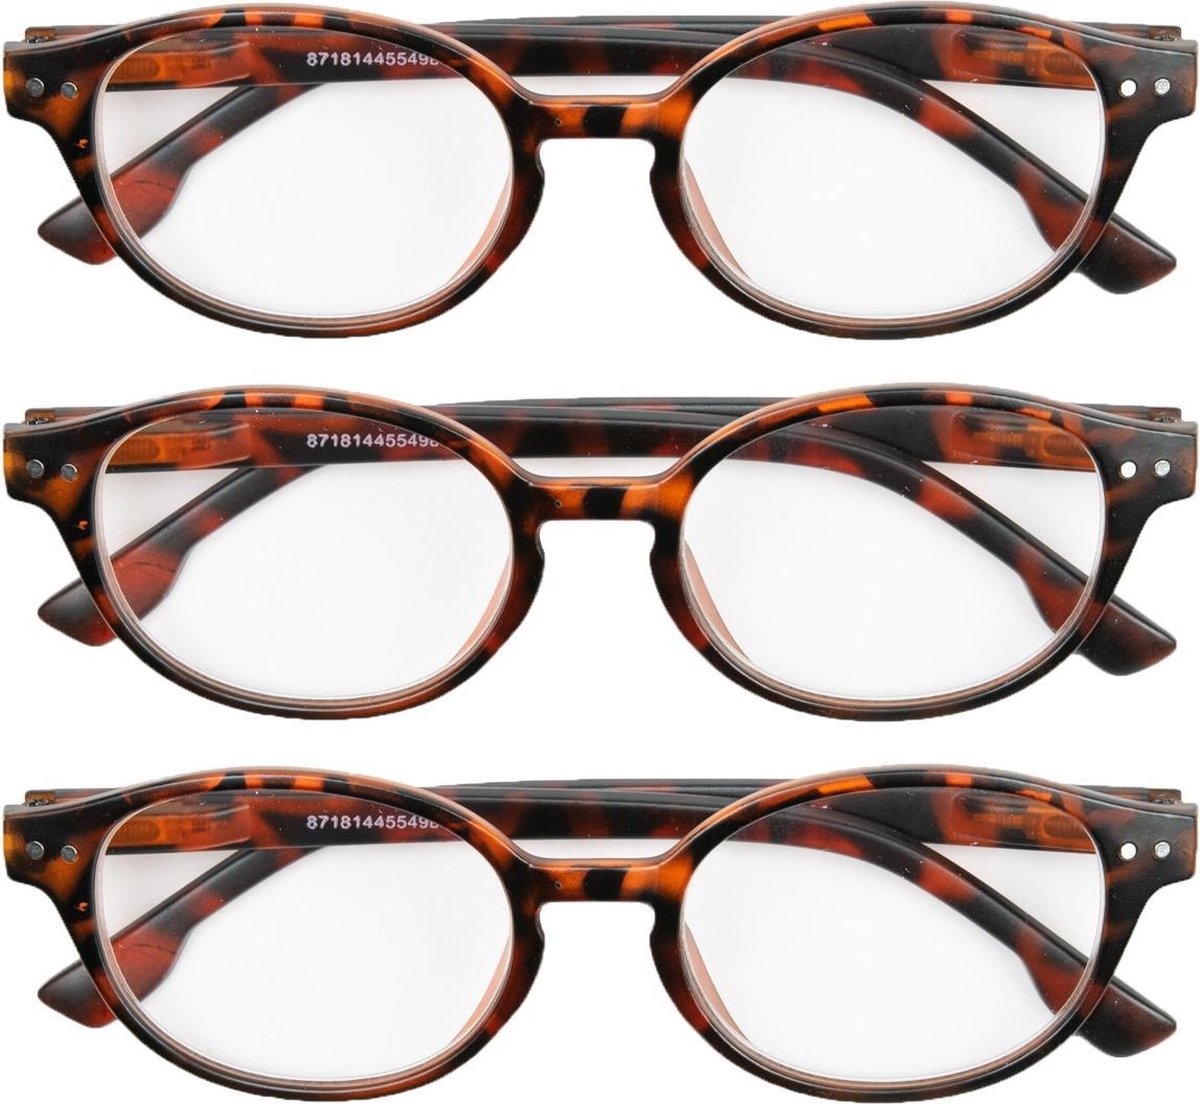 Leesbril mat havanna rond +1,50 - 3 stuks - leesbrillen bruin